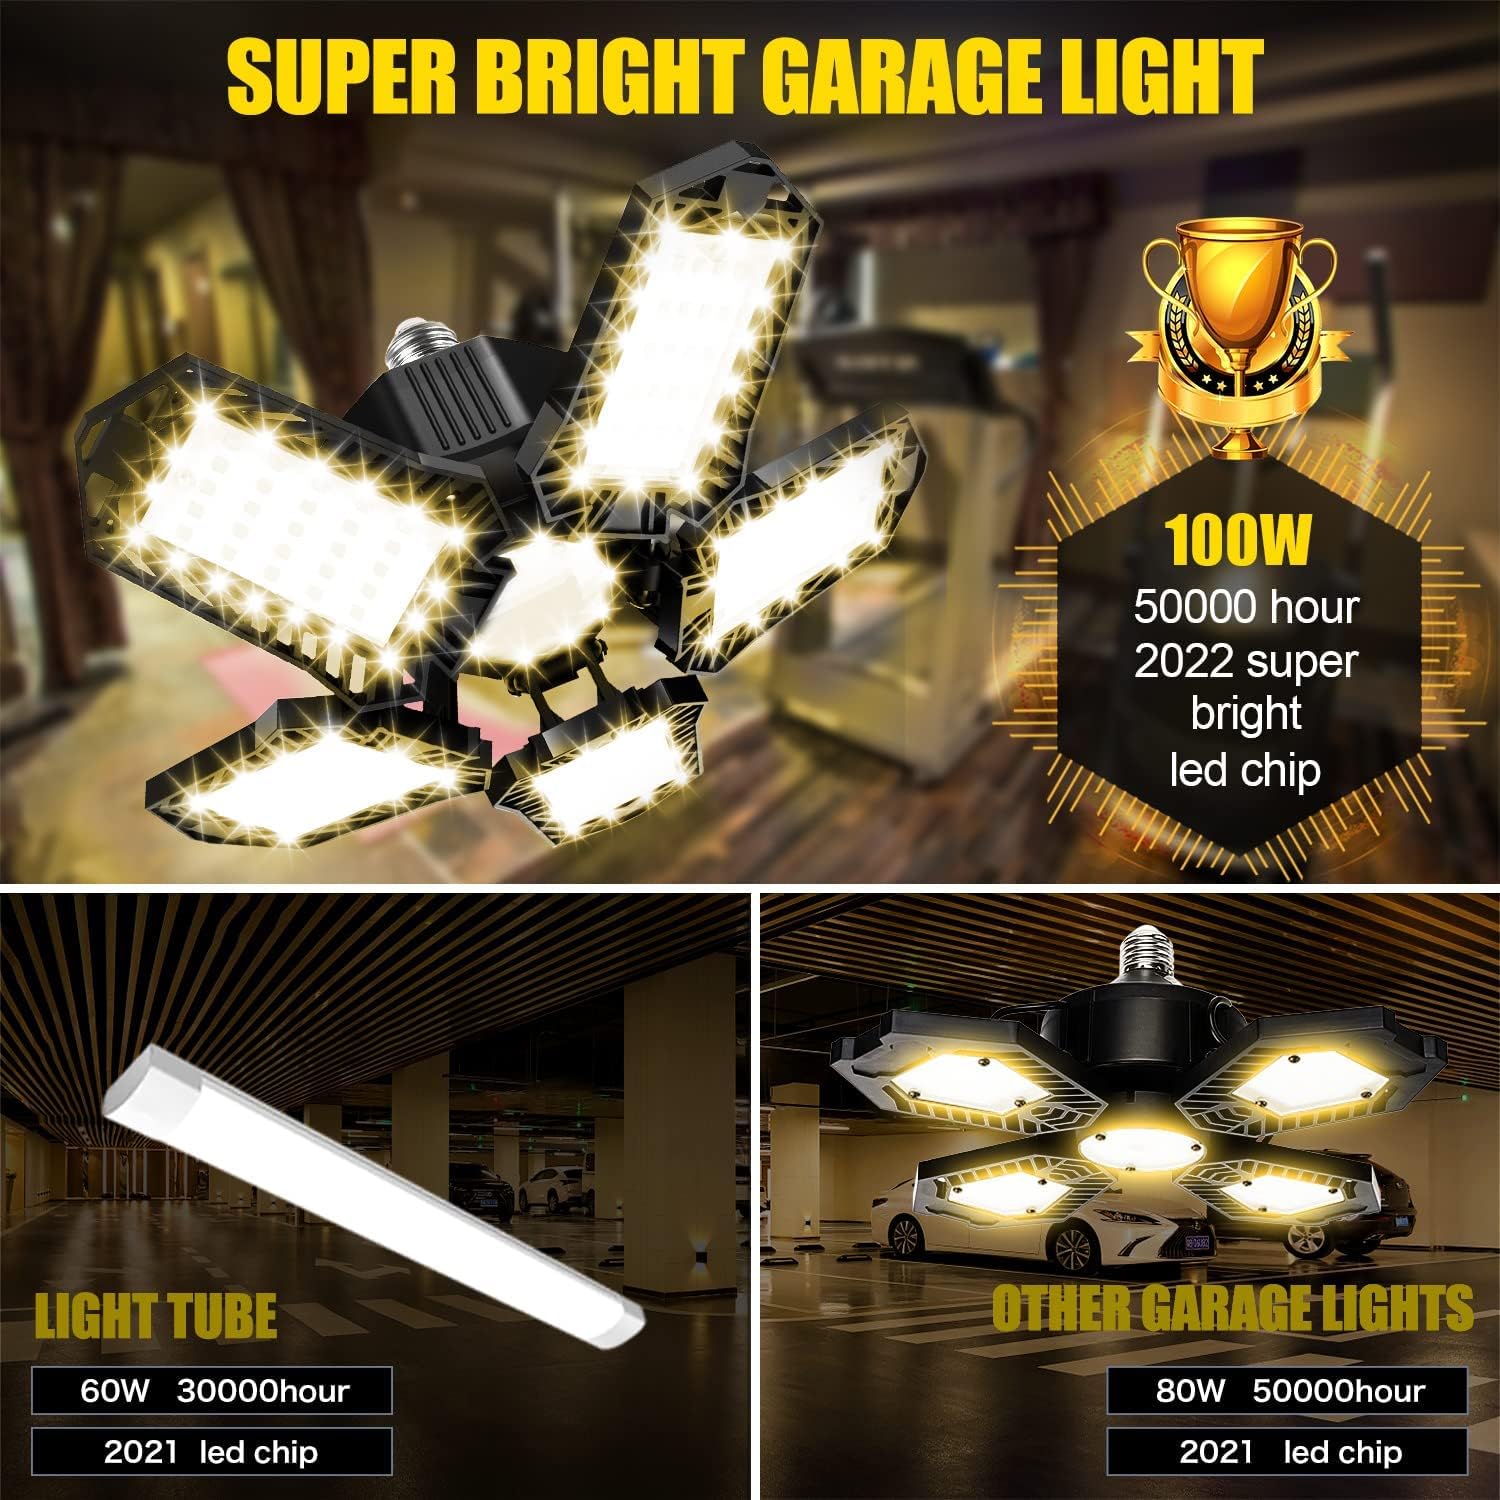 100W 10000LM 3000K 5+1 Panels Warm Led Garage Lights (2 Pack)